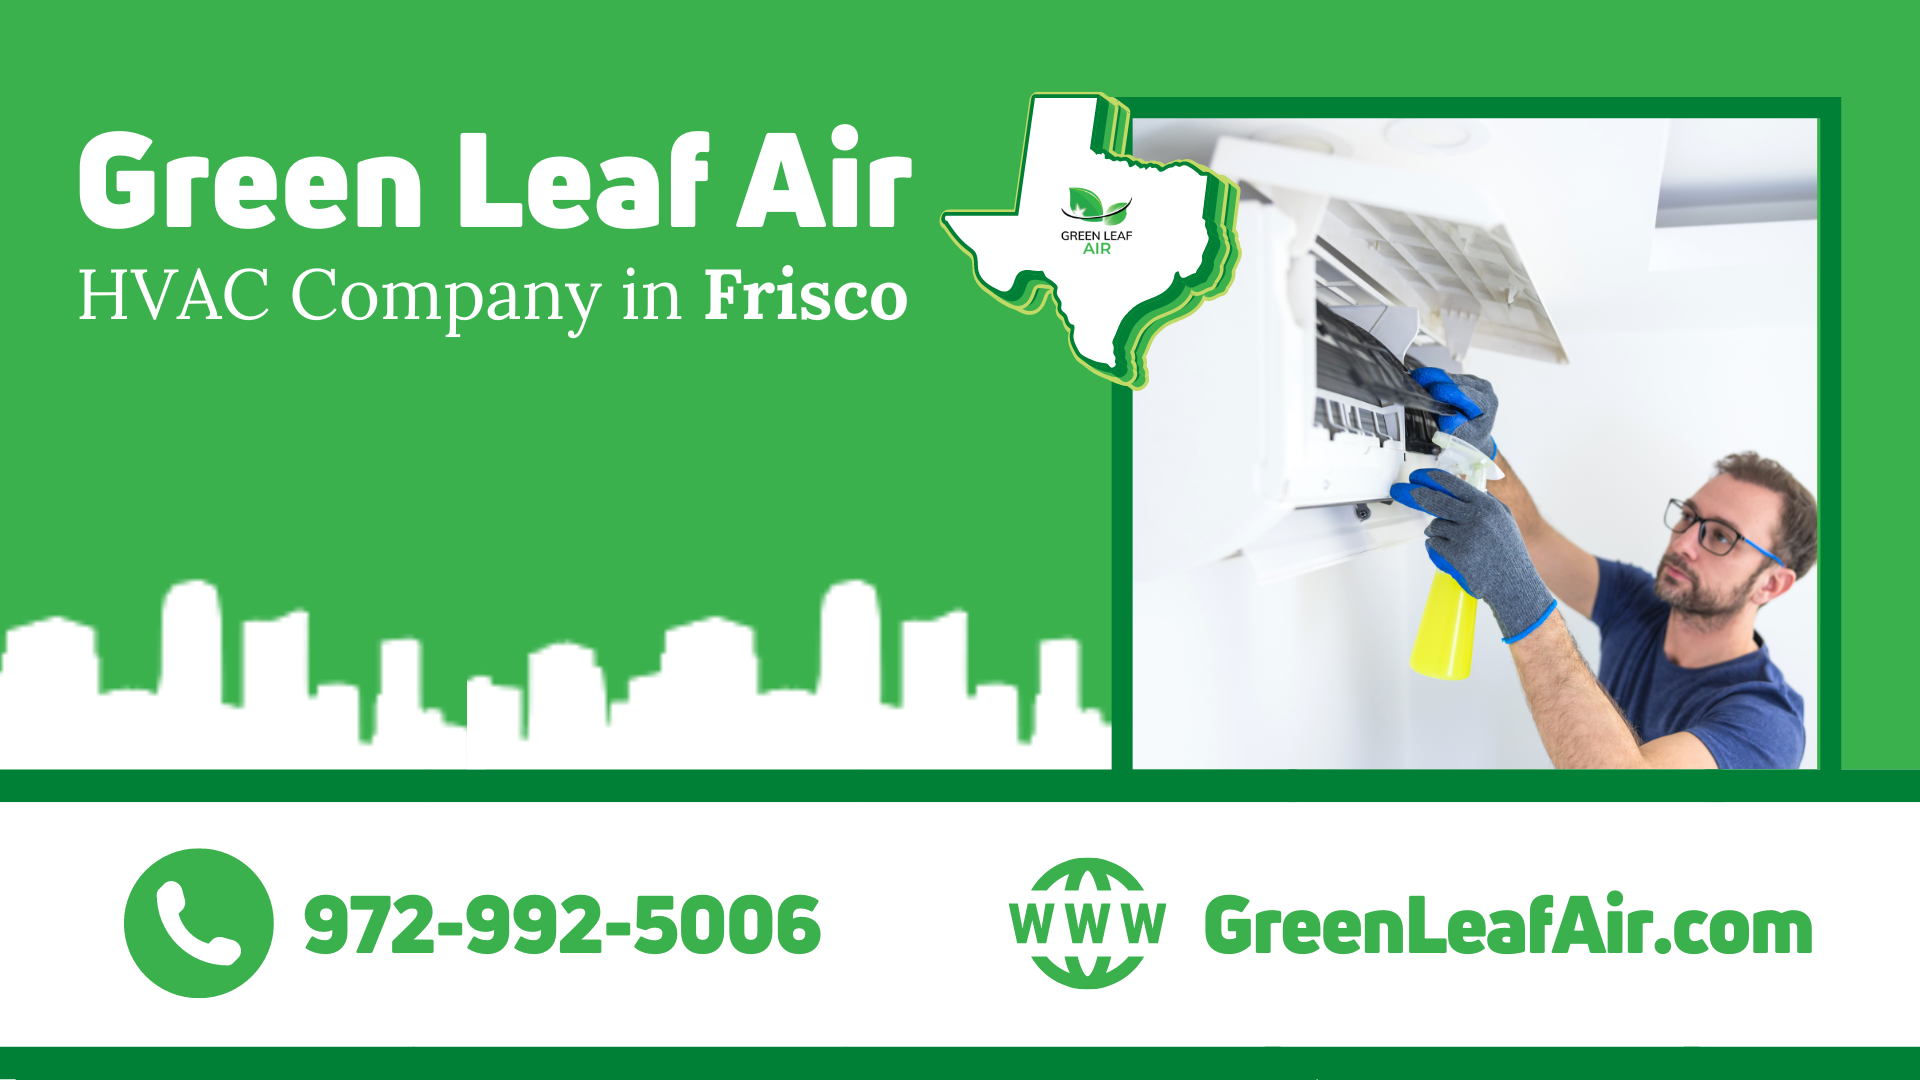 Green Leaf Air — HVAC Company in Frisco, Texas